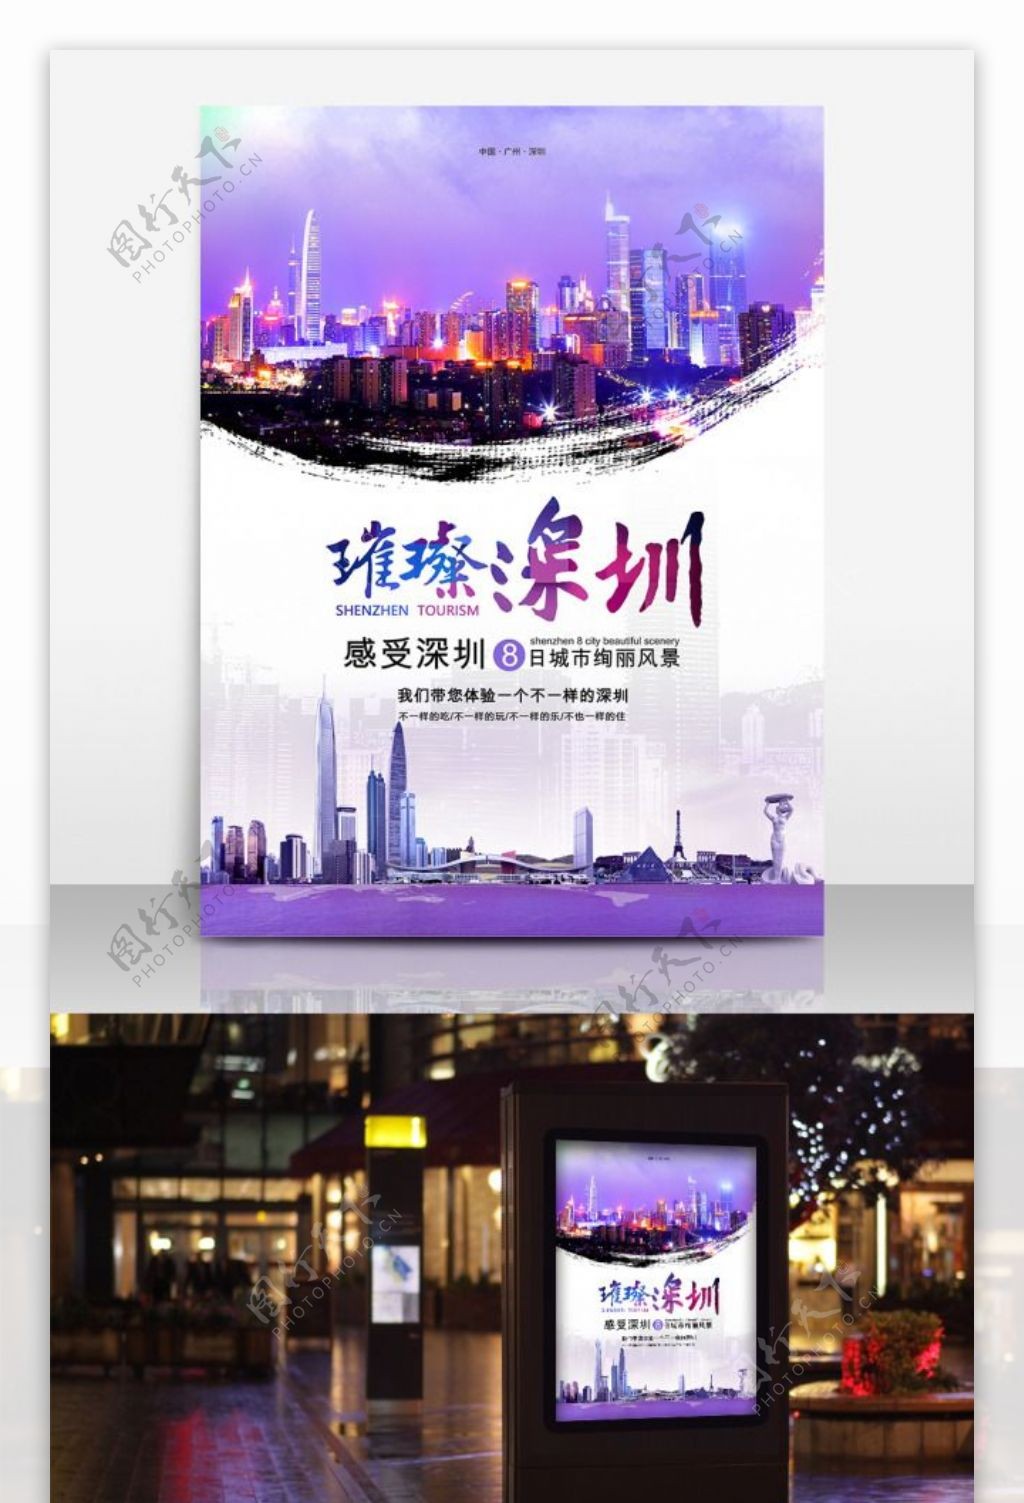 璀璨深圳旅行社宣传旅游海报